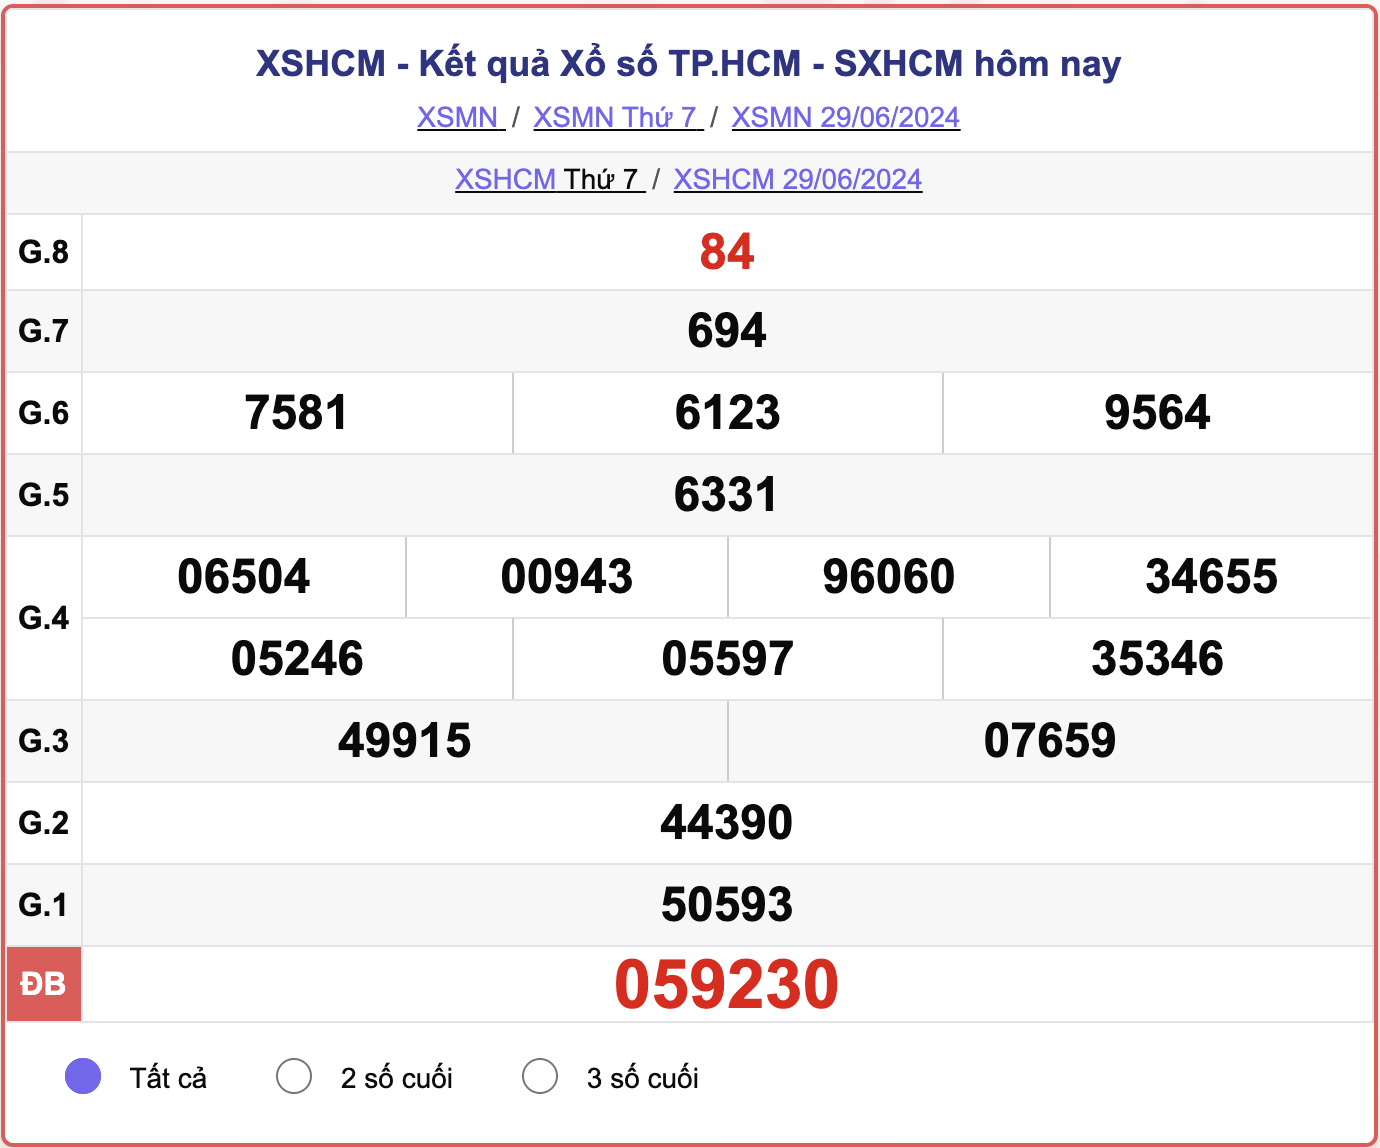 XSHCM 29/6, kết quả xổ số TP.HCM hôm nay 29/6/2024.